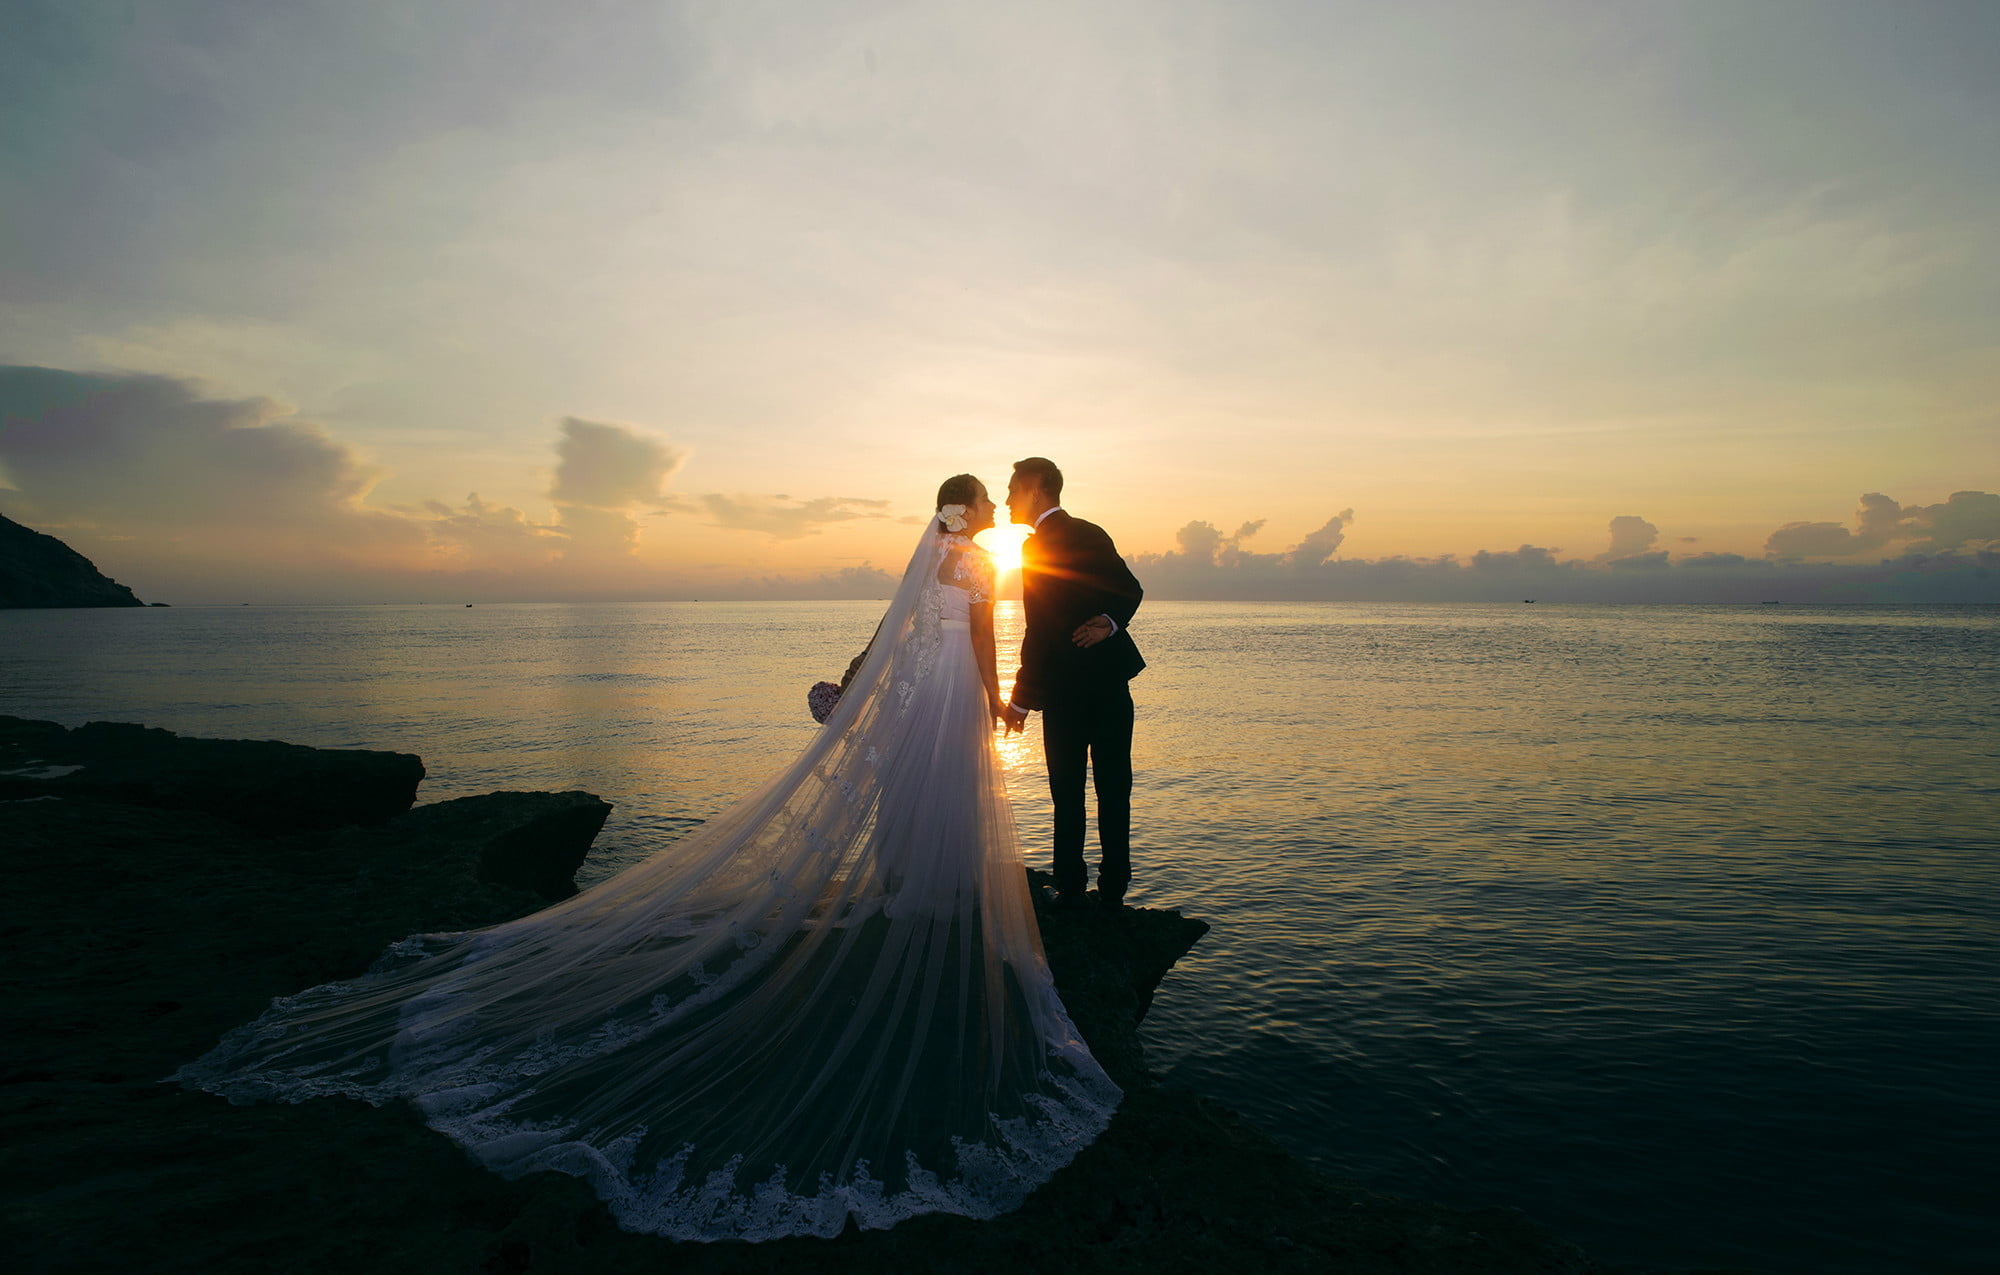 Hình cưới lãng mạn trên biển cho cặp đôi